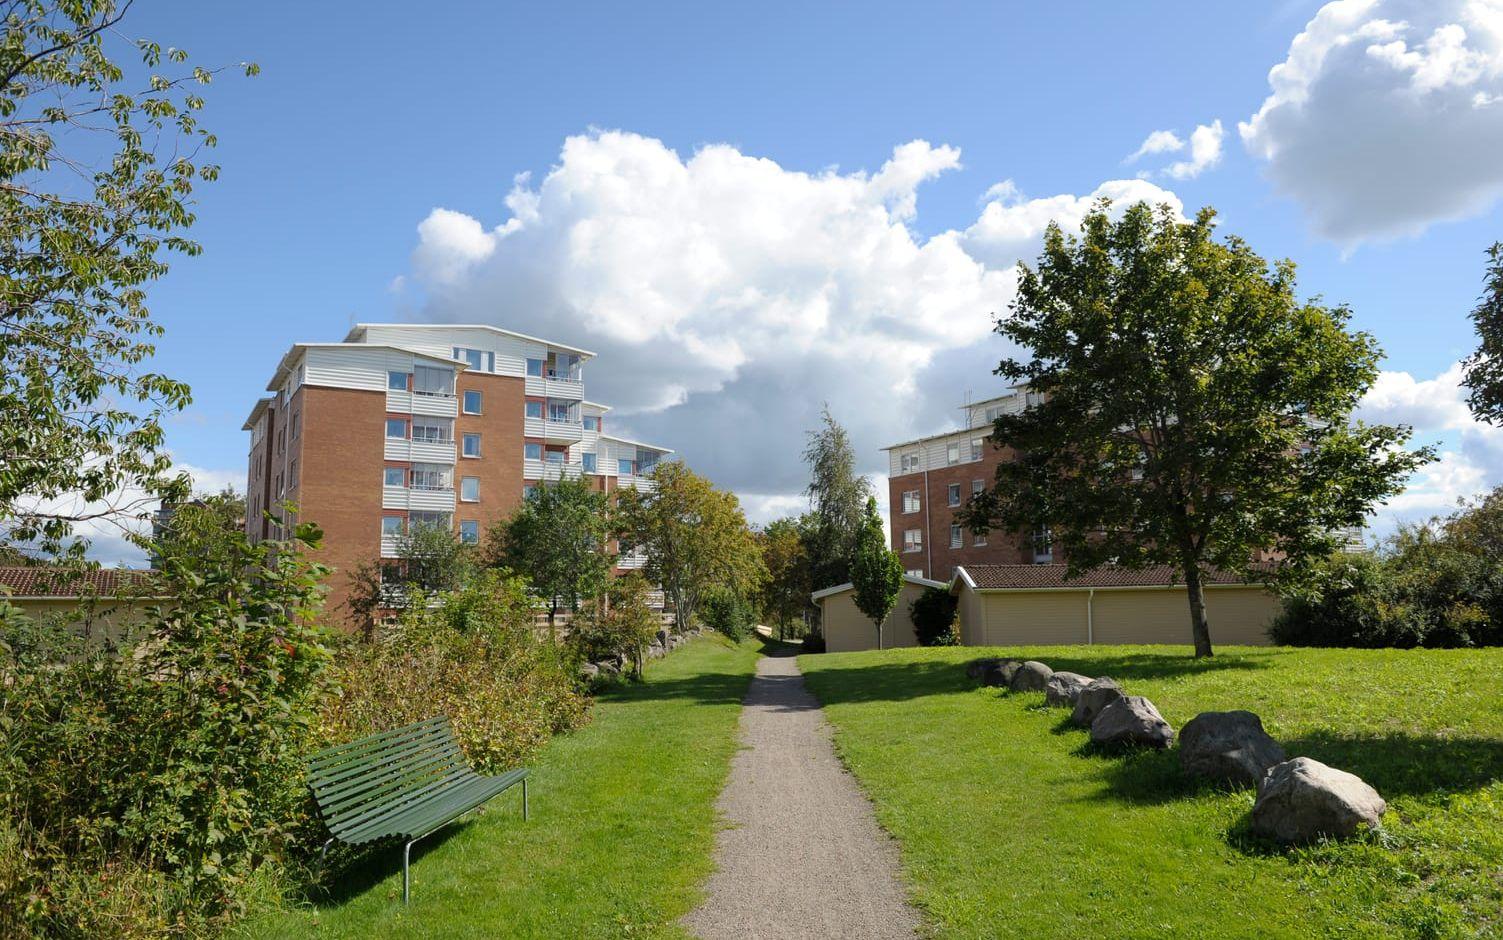 Varbergs Bostad AB vill bygga drygt 200 nya lägenheter på Apelvikshöjd. Bild: Rebecka Kvint